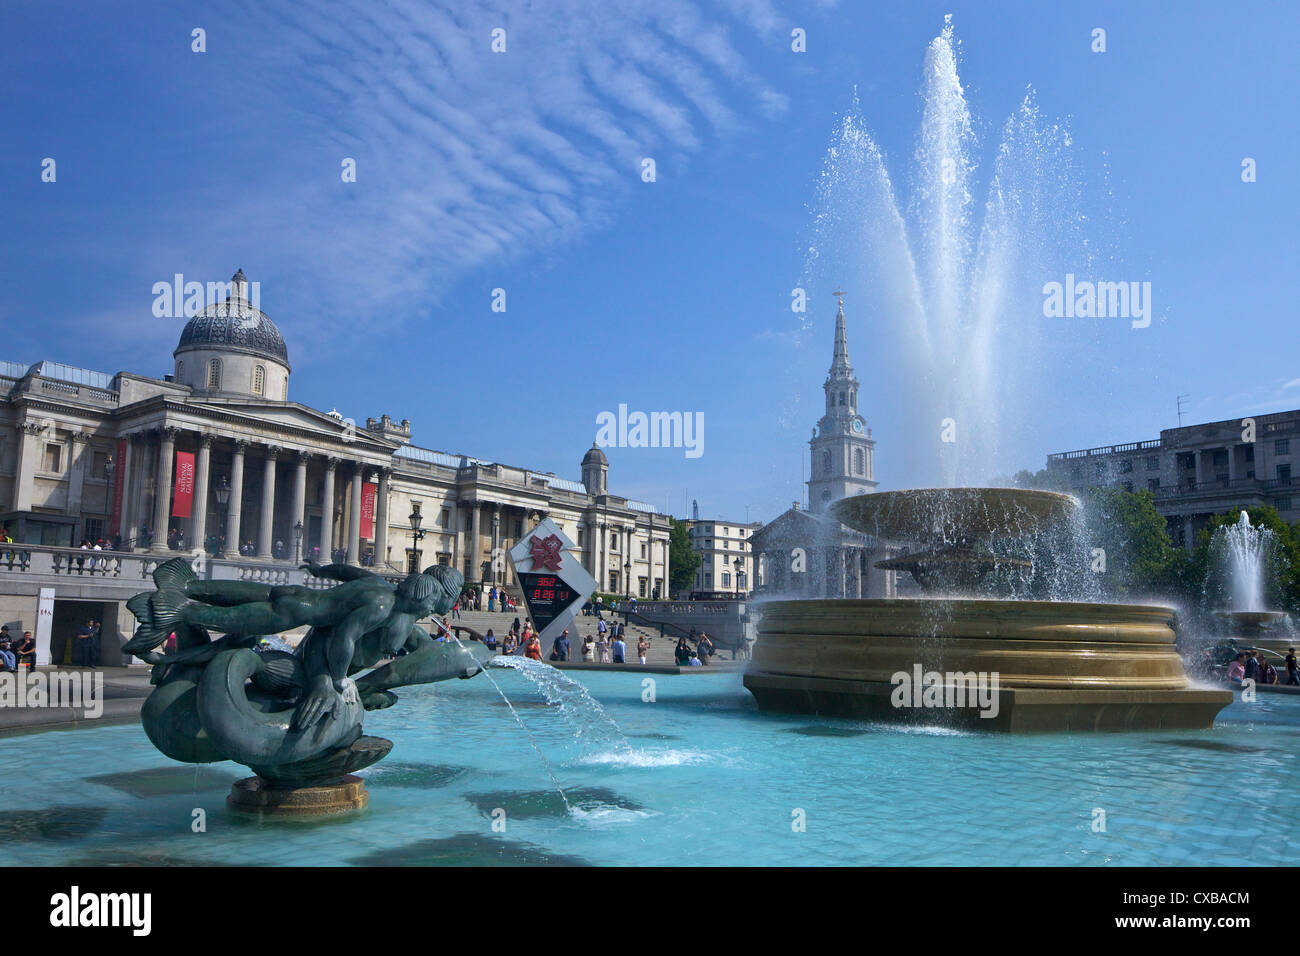 Tritonen und Delphinbrunnen mit den Olympischen digitalen Countdown-Uhr und der National Gallery, Trafalgar Square, London Stockfoto